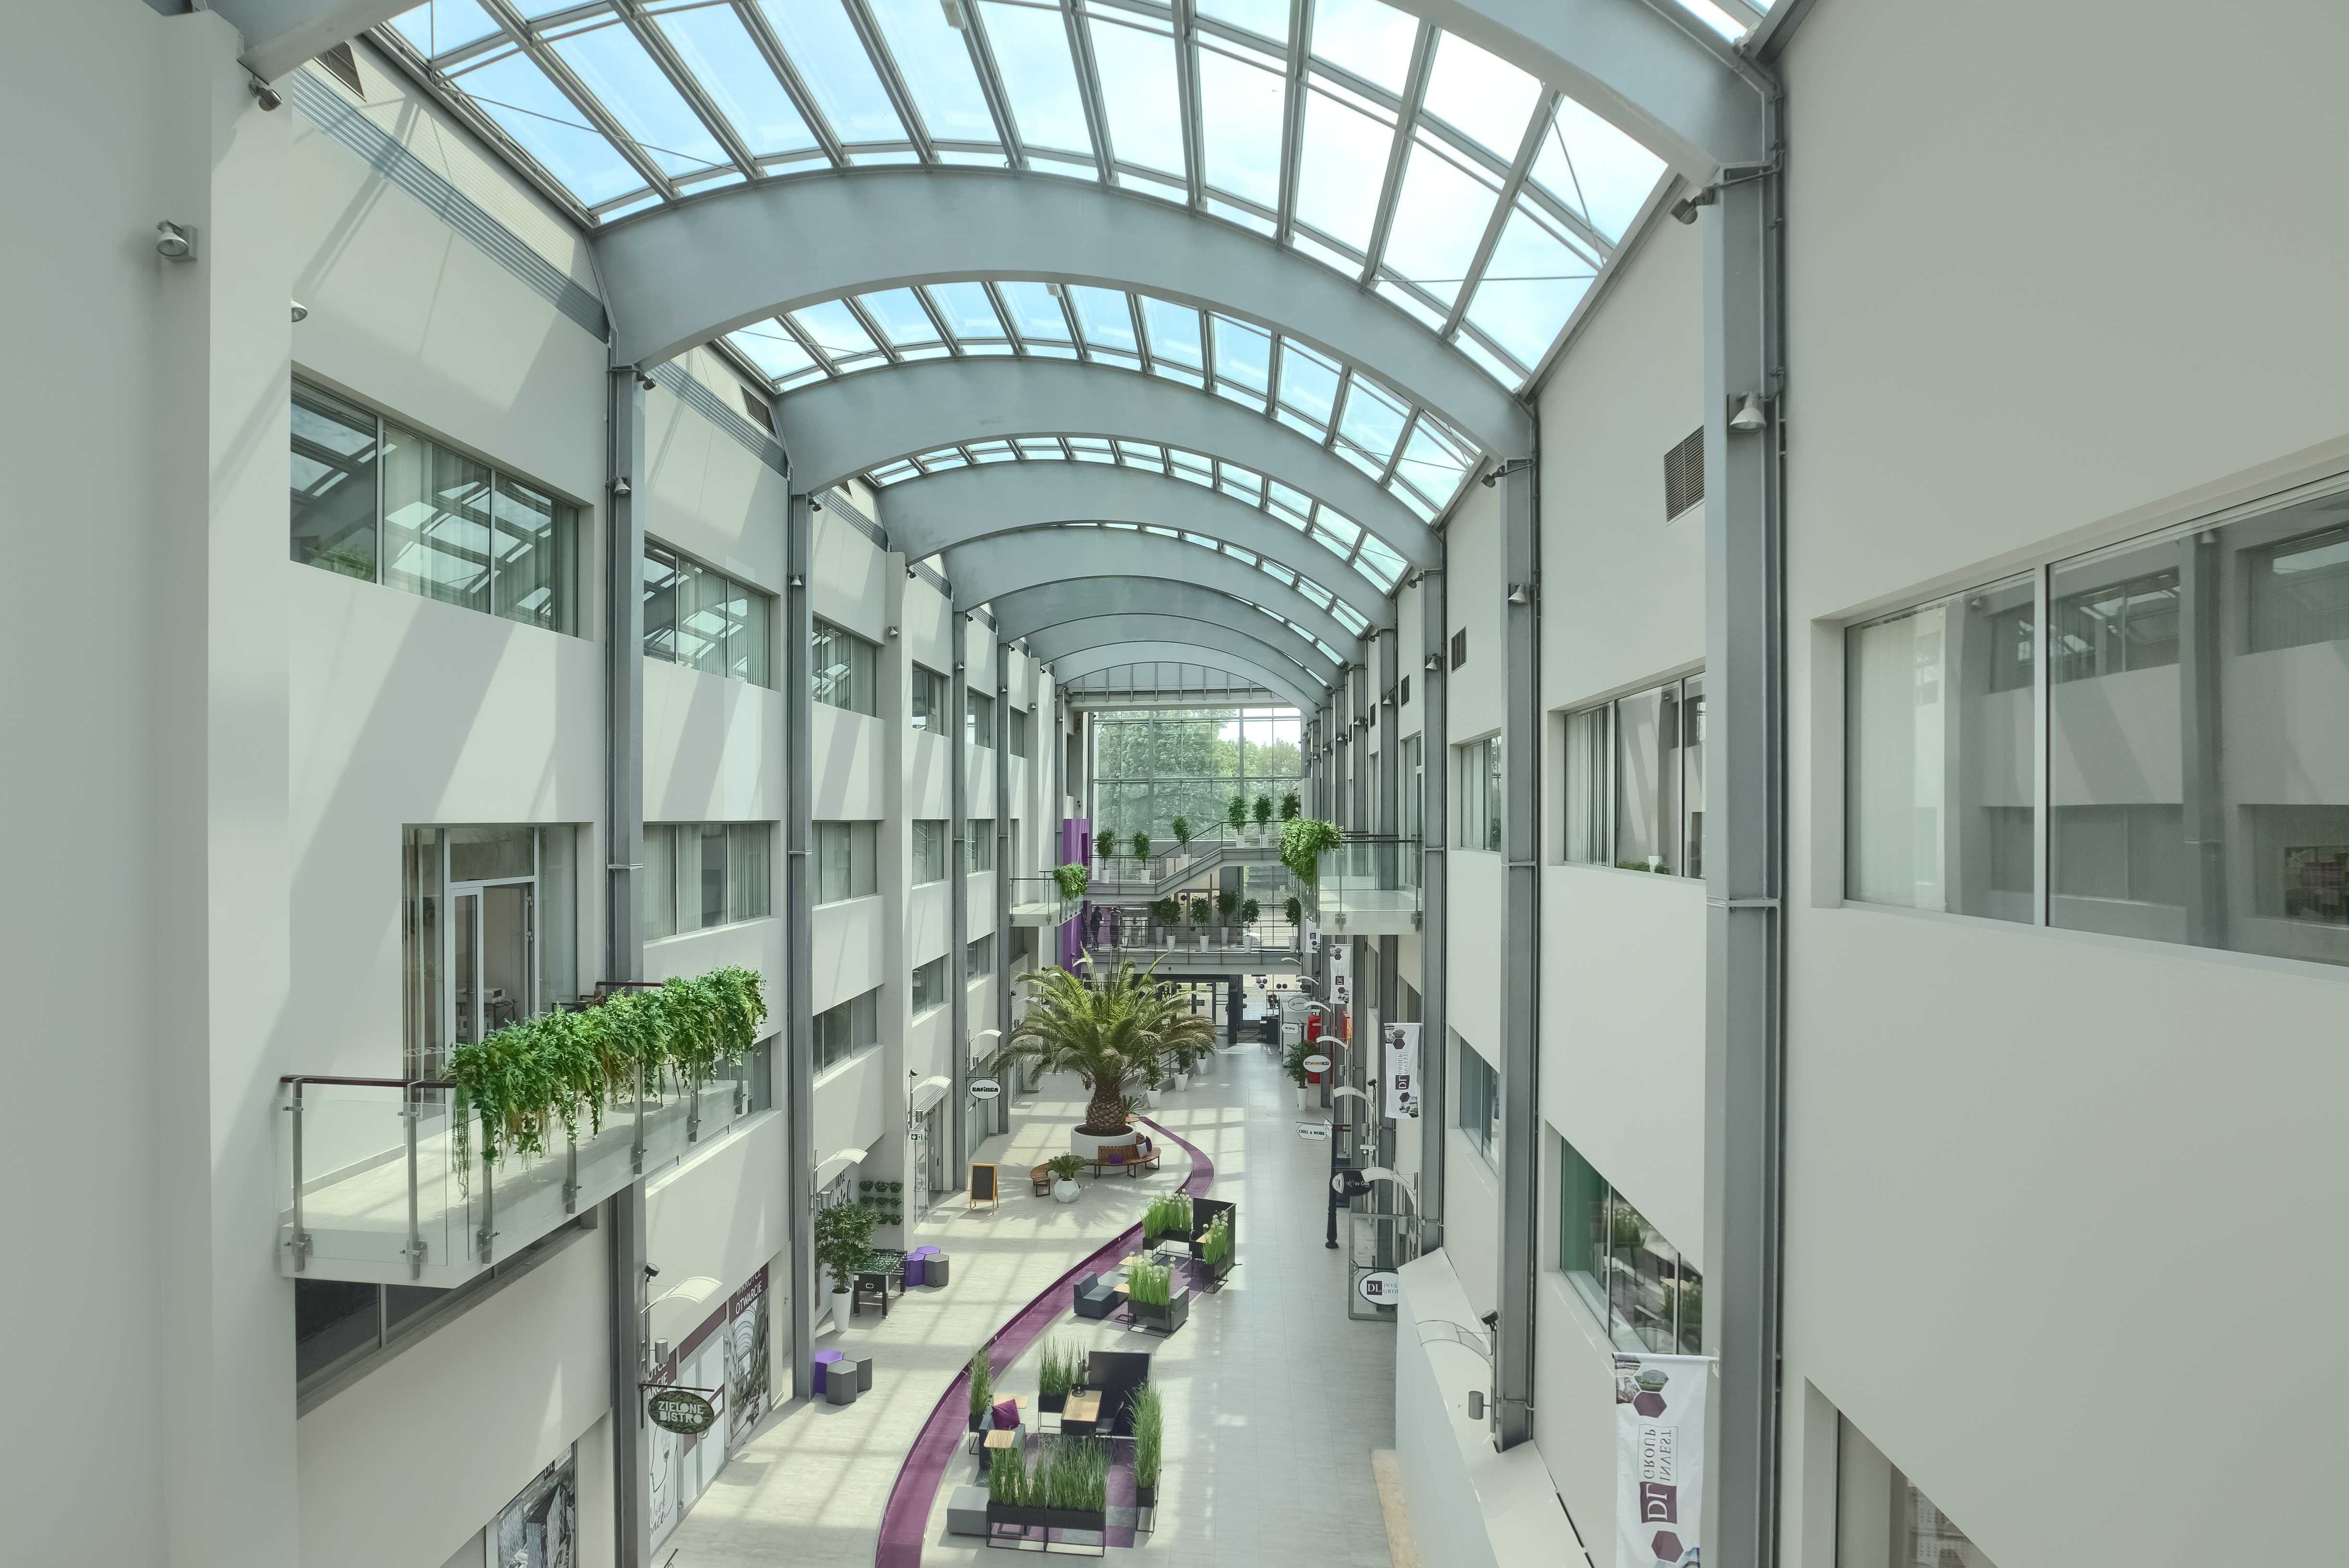 Ulokuj swój biznes w nowoczesnym kompleksie - różny metraż | DL Atrium